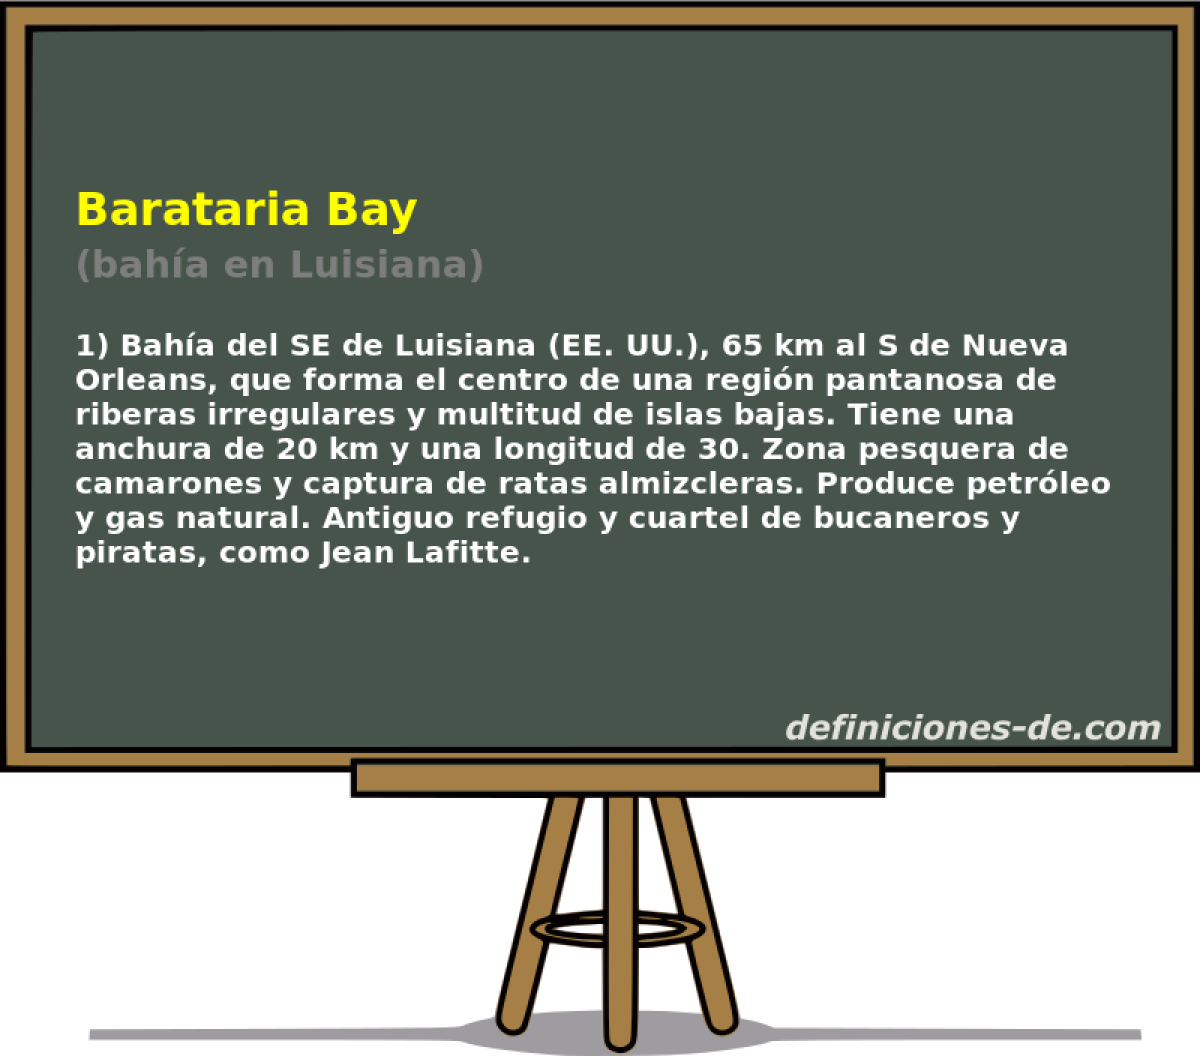 Barataria Bay (baha en Luisiana)